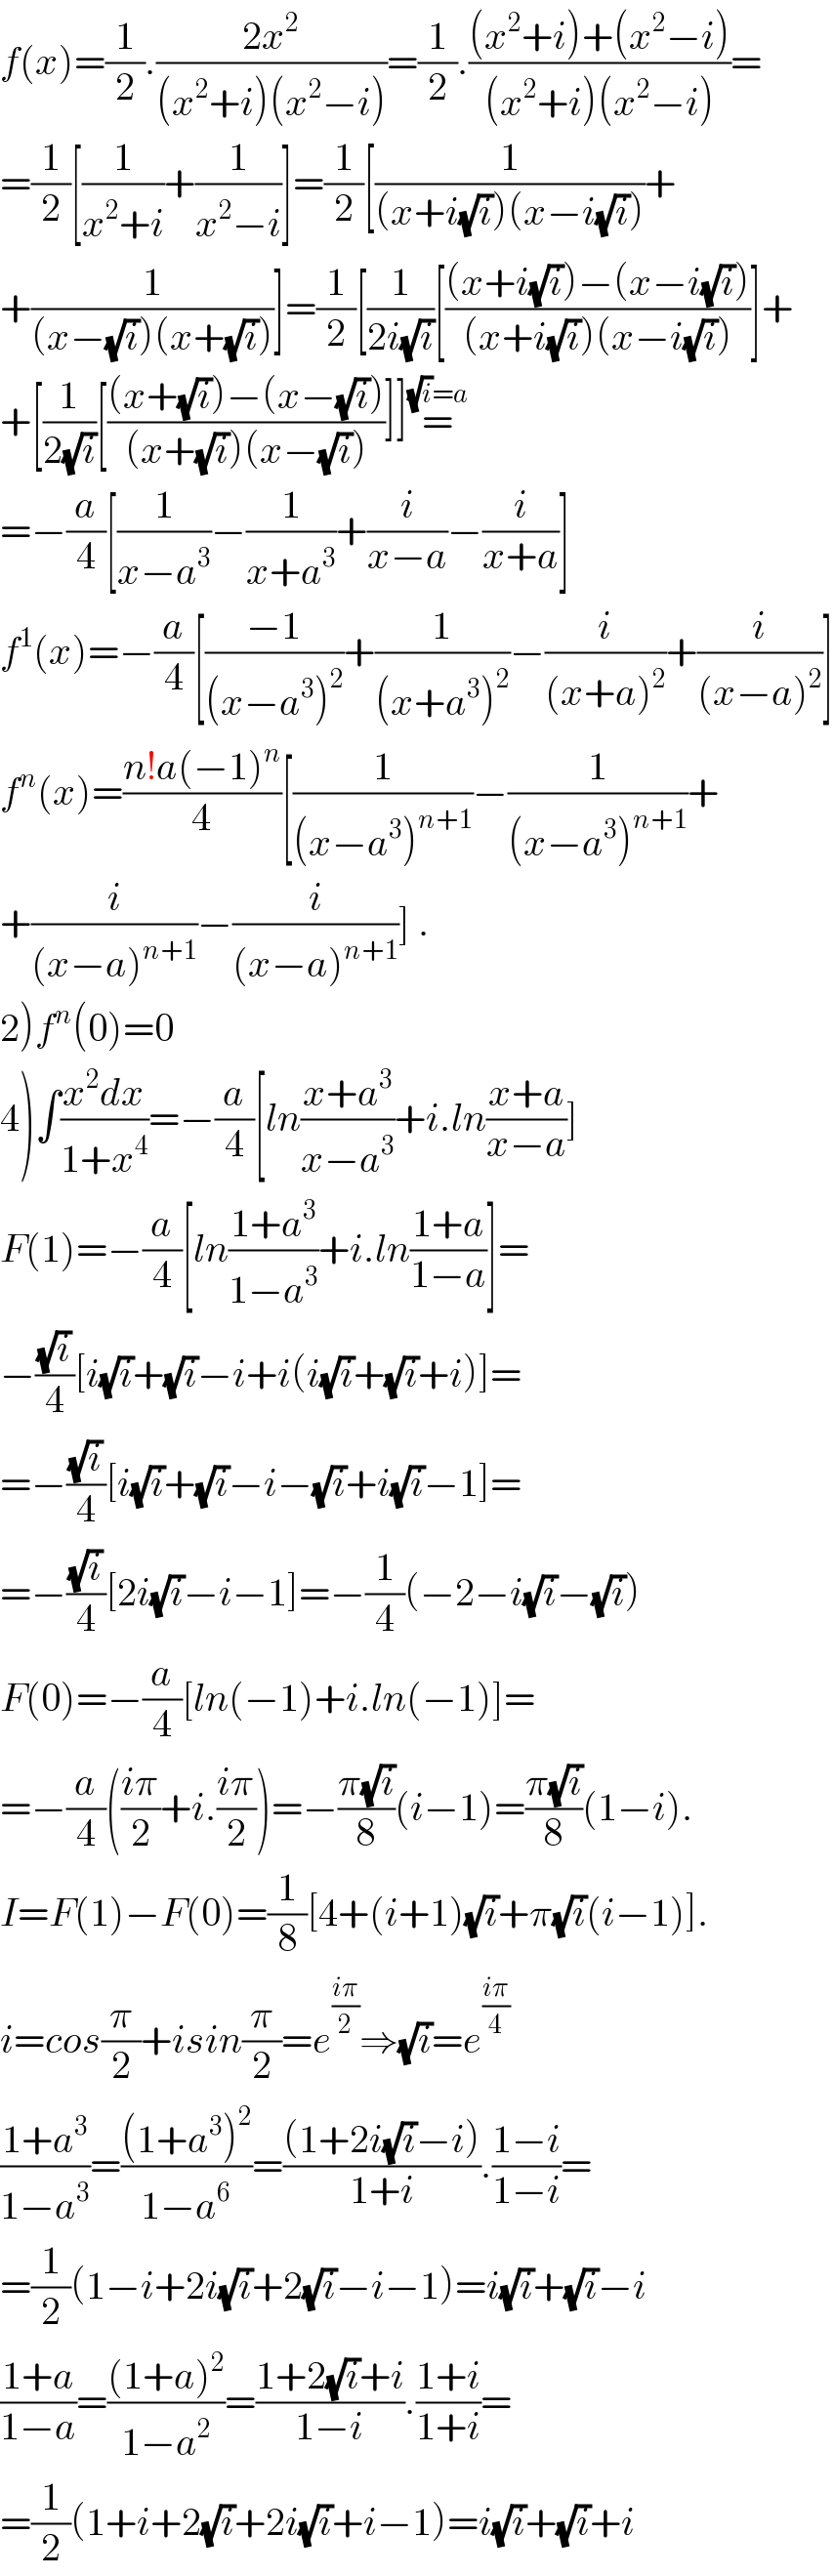 f(x)=(1/2).((2x^2 )/((x^2 +i)(x^2 −i)))=(1/2).(((x^2 +i)+(x^2 −i))/((x^2 +i)(x^2 −i)))=  =(1/2)[(1/(x^2 +i))+(1/(x^2 −i))]=(1/2)[(1/((x+i(√i))(x−i(√i))))+  +(1/((x−(√i))(x+(√i))))]=(1/2)[(1/(2i(√i)))[(((x+i(√i))−(x−i(√i)))/((x+i(√i))(x−i(√i))))]+  +[(1/(2(√i)))[(((x+(√i))−(x−(√i)))/((x+(√i))(x−(√i))))]]=^((√i)=a)   =−(a/4)[(1/(x−a^3 ))−(1/(x+a^3 ))+(i/(x−a))−(i/(x+a))]  f^1 (x)=−(a/4)[((−1)/((x−a^3 )^2 ))+(1/((x+a^3 )^2 ))−(i/((x+a)^2 ))+(i/((x−a)^2 ))]  f^n (x)=((n!a(−1)^n )/4)[(1/((x−a^3 )^(n+1) ))−(1/((x−a^3 )^(n+1) ))+  +(i/((x−a)^(n+1) ))−(i/((x−a)^(n+1) ))] .  2)f^n (0)=0  4)∫((x^2 dx)/(1+x^4 ))=−(a/4)[ln((x+a^3 )/(x−a^3 ))+i.ln((x+a)/(x−a))]  F(1)=−(a/4)[ln((1+a^3 )/(1−a^3 ))+i.ln((1+a)/(1−a))]=  −((√i)/4)[i(√i)+(√i)−i+i(i(√i)+(√i)+i)]=  =−((√i)/4)[i(√i)+(√i)−i−(√i)+i(√i)−1]=  =−((√i)/4)[2i(√i)−i−1]=−(1/4)(−2−i(√i)−(√i))  F(0)=−(a/4)[ln(−1)+i.ln(−1)]=  =−(a/4)(((iπ)/2)+i.((iπ)/2))=−((π(√i))/8)(i−1)=((π(√i))/8)(1−i).  I=F(1)−F(0)=(1/8)[4+(i+1)(√i)+π(√i)(i−1)].  i=cos(π/2)+isin(π/2)=e^((iπ)/2) ⇒(√i)=e^((iπ)/4)   ((1+a^3 )/(1−a^3 ))=(((1+a^3 )^2 )/(1−a^6 ))=(((1+2i(√i)−i))/(1+i)).((1−i)/(1−i))=  =(1/2)(1−i+2i(√i)+2(√i)−i−1)=i(√i)+(√i)−i  ((1+a)/(1−a))=(((1+a)^2 )/(1−a^2 ))=((1+2(√i)+i)/(1−i)).((1+i)/(1+i))=  =(1/2)(1+i+2(√i)+2i(√i)+i−1)=i(√i)+(√i)+i  